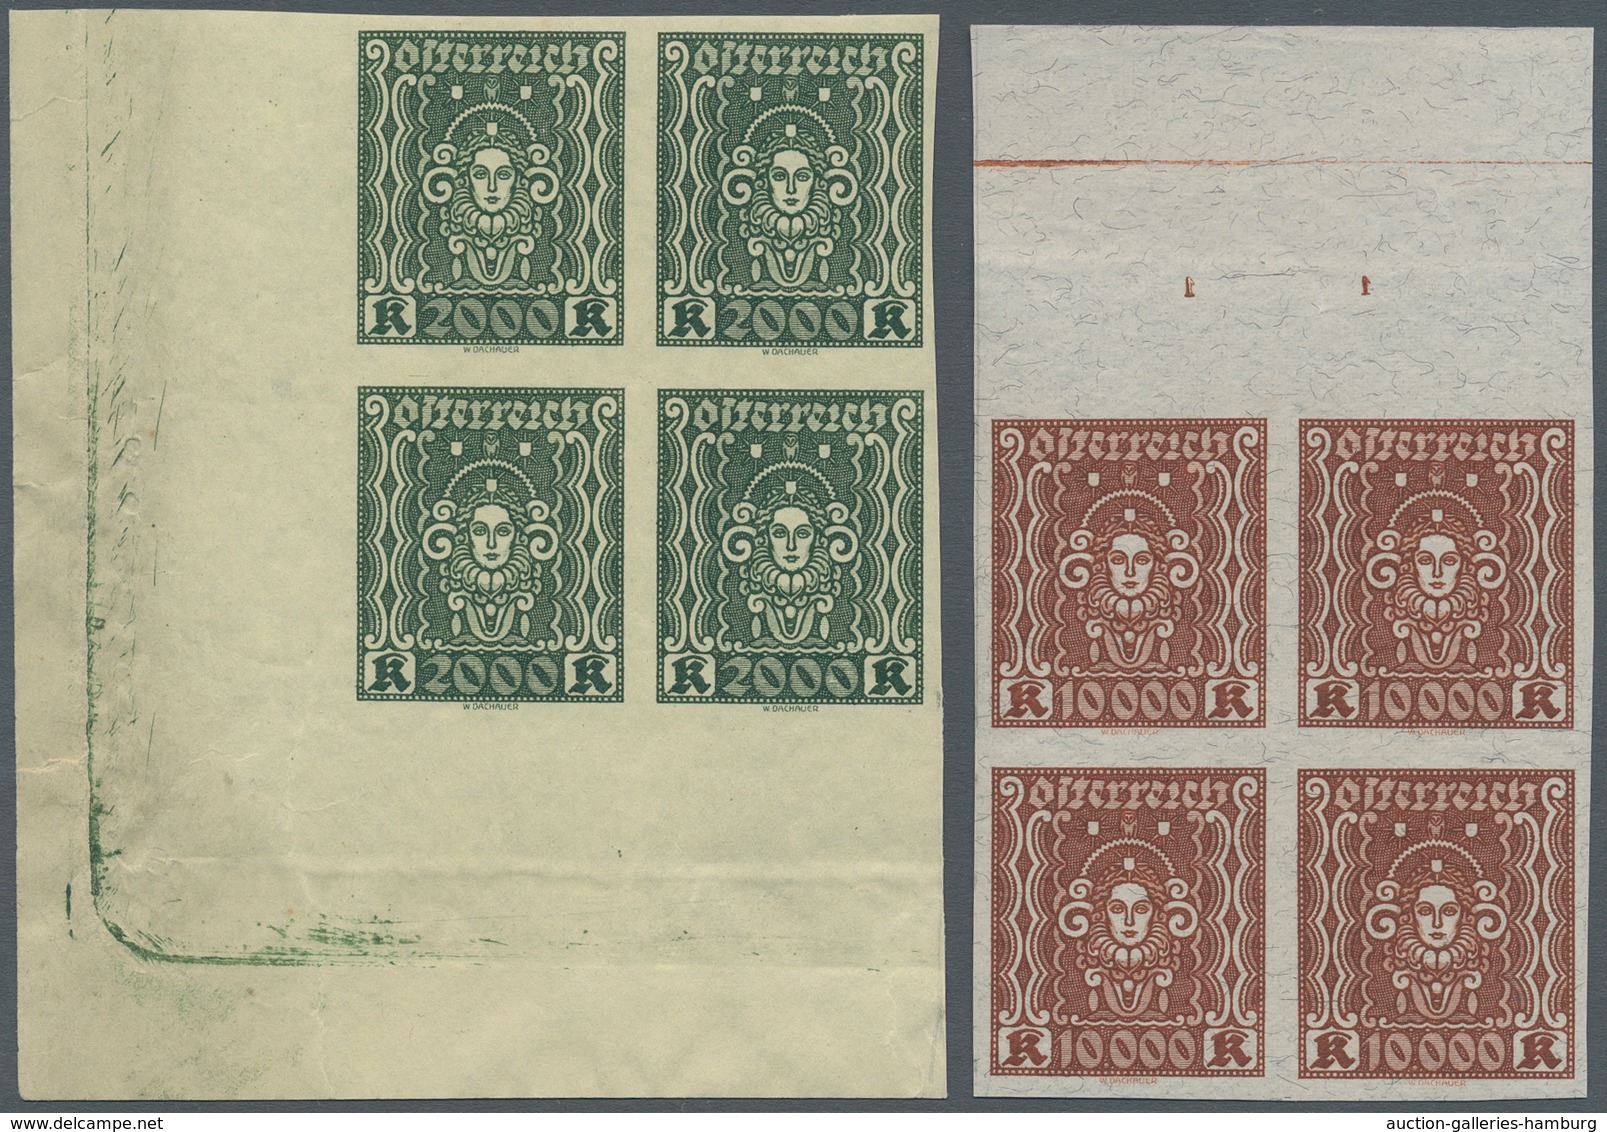 Österreich: 1922, 20-10.000 Kr Frauenkopf ungezähnt, komplett 11 Werte in postfrischen Rand- bzw. Ec